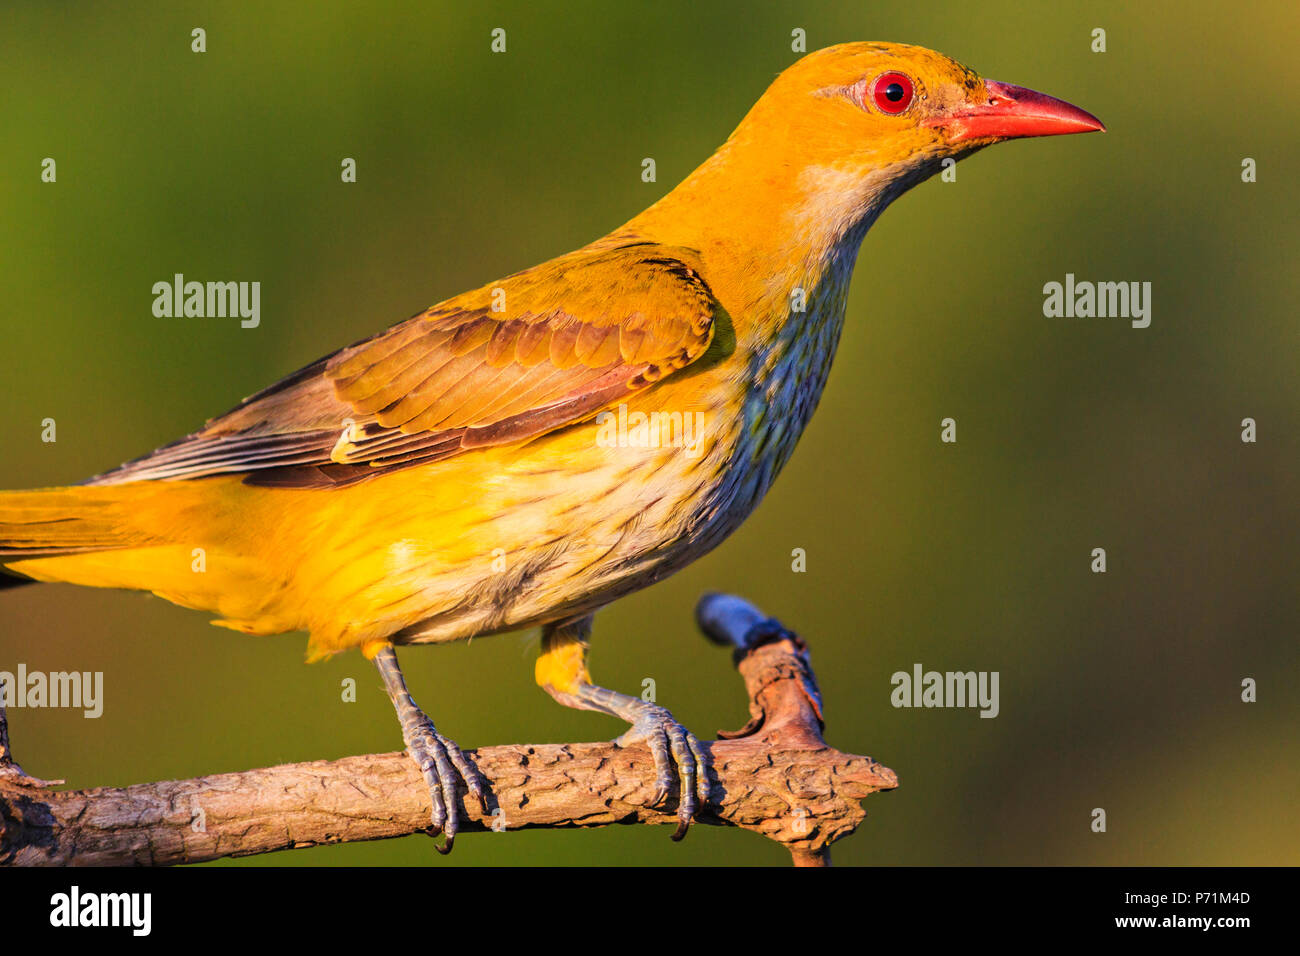 Aves exóticas amarillo con pico rojo , la fauna, marcos únicos Foto de stock